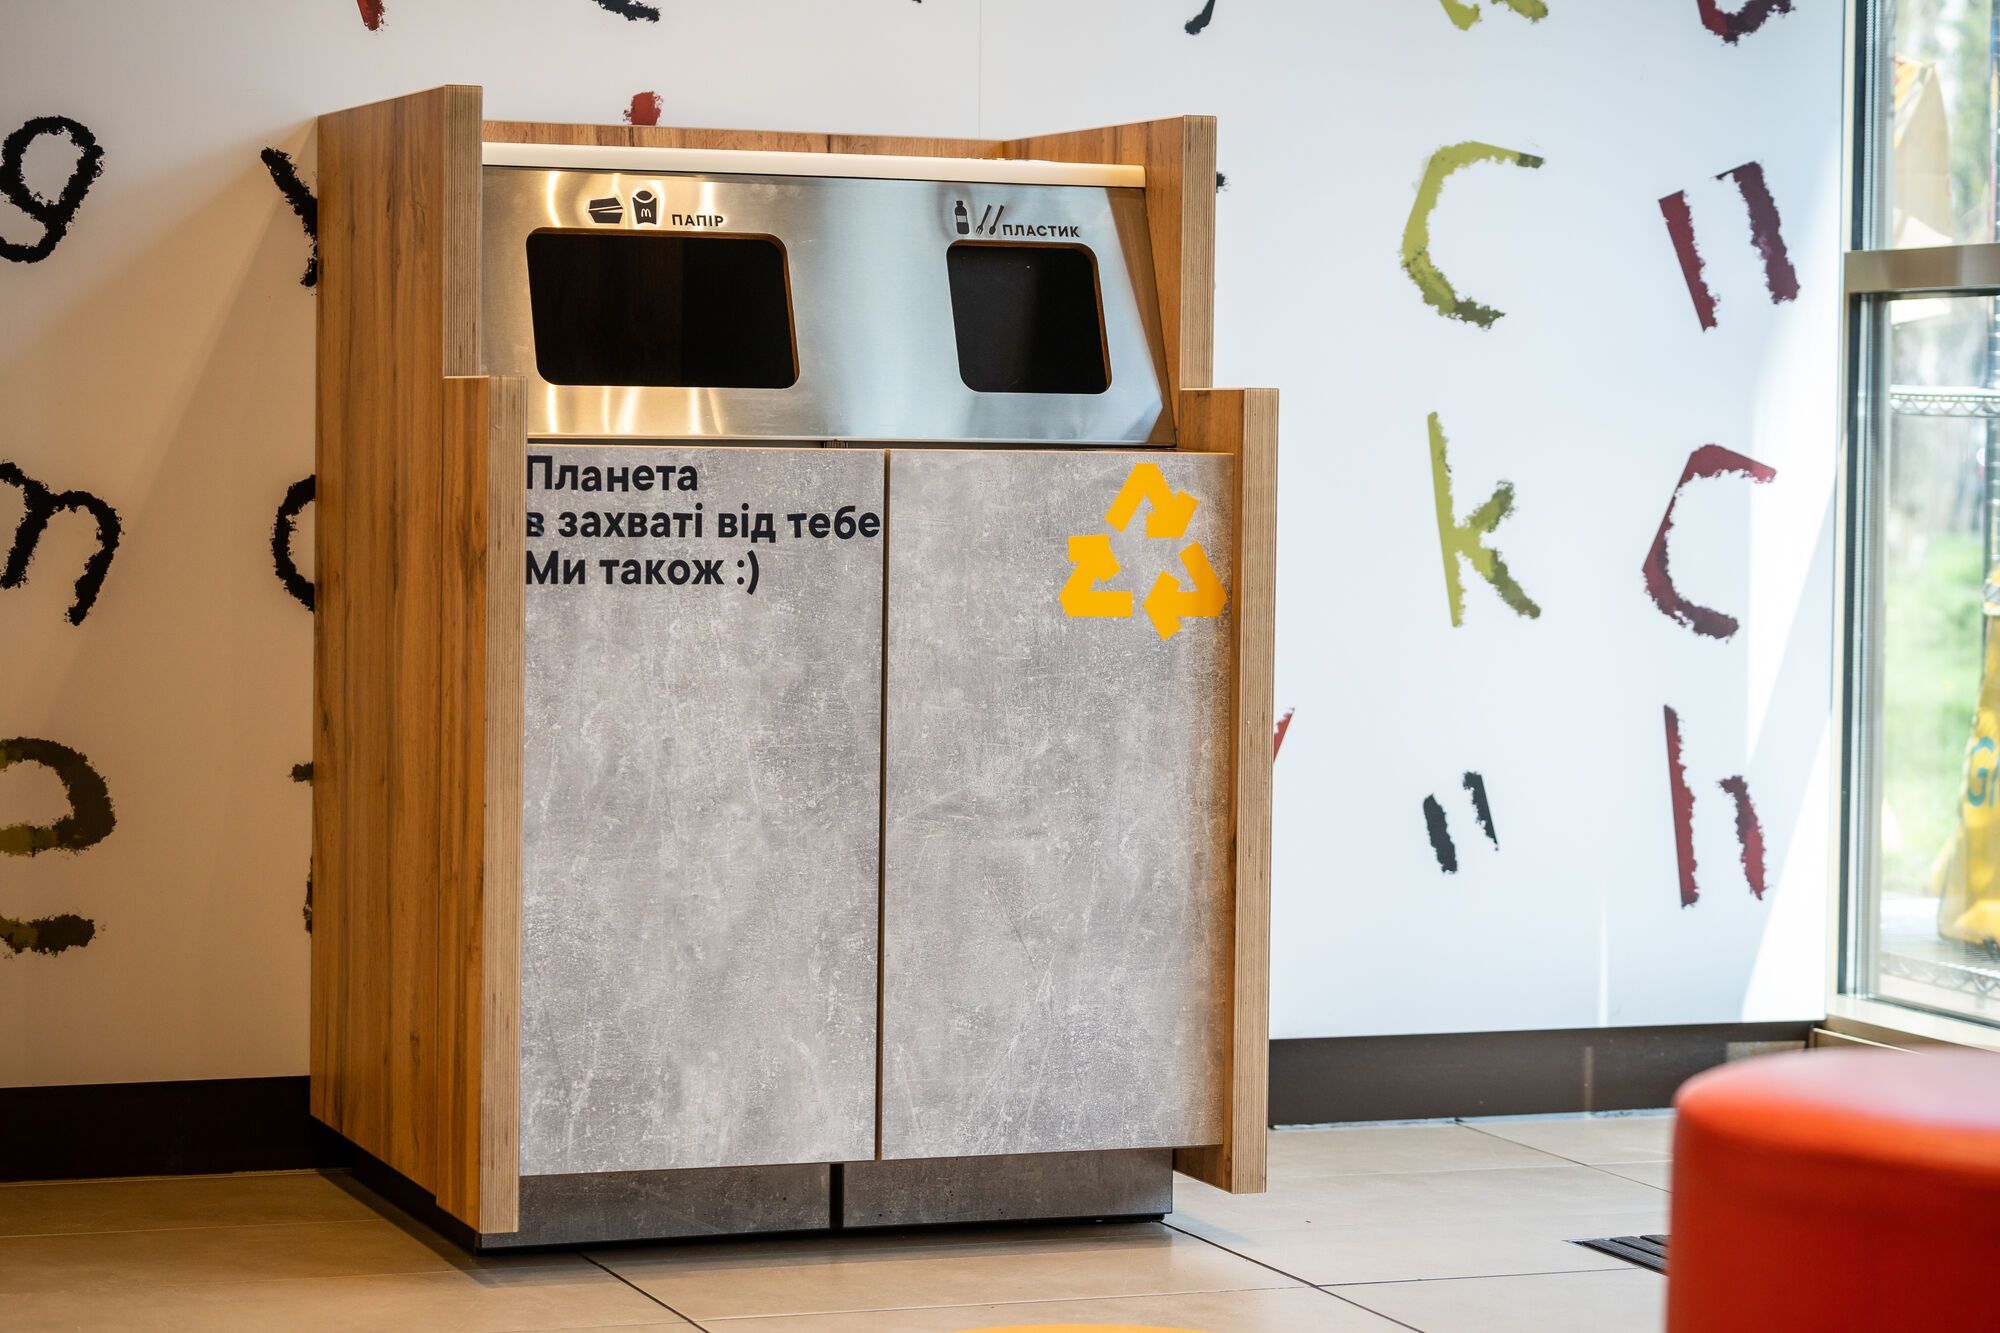 "Сортируй - мы переработаем": МакДональдз внедрил сортировку и переработку отходов в залах ресторанов по всей Украине